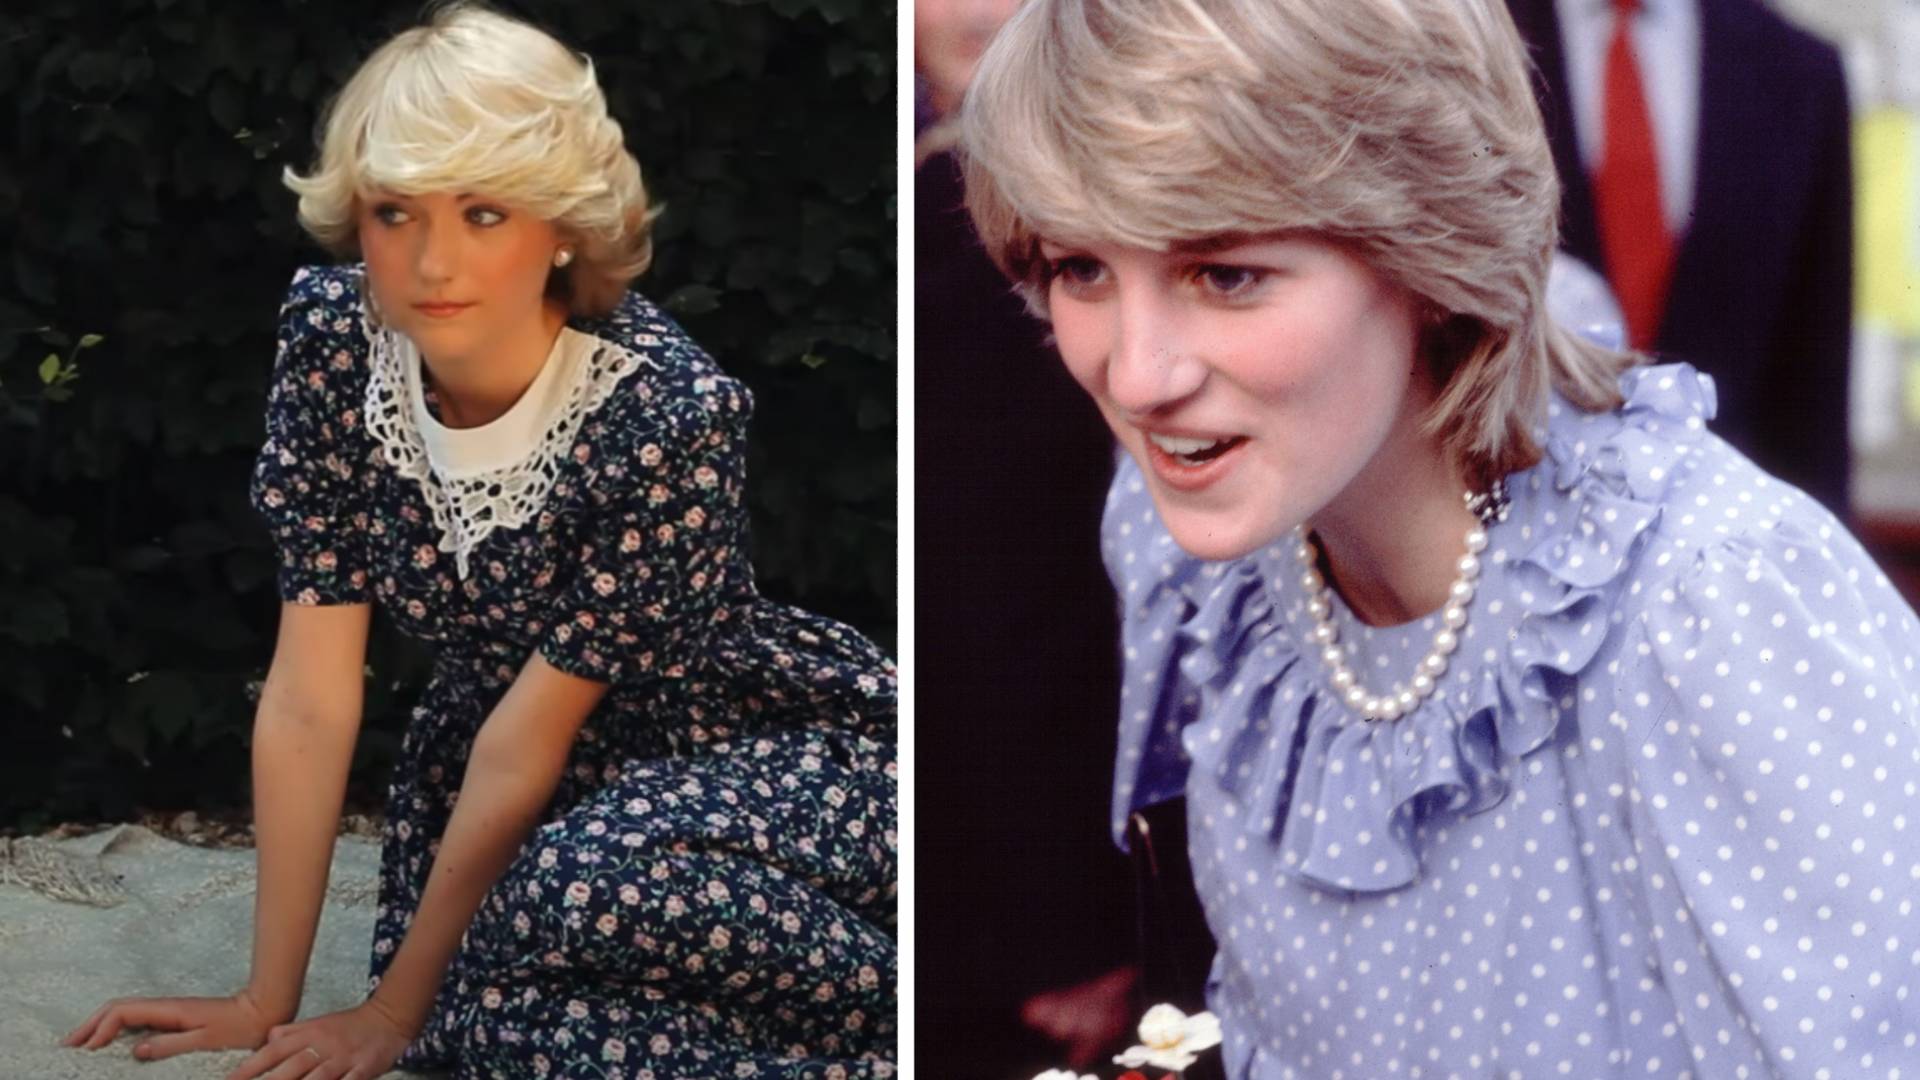 Ta dziewczyna wygląda jak młoda księżna Diana. Podobieństwo jest niesamowite! Zdradza sekret na jej fryzurę